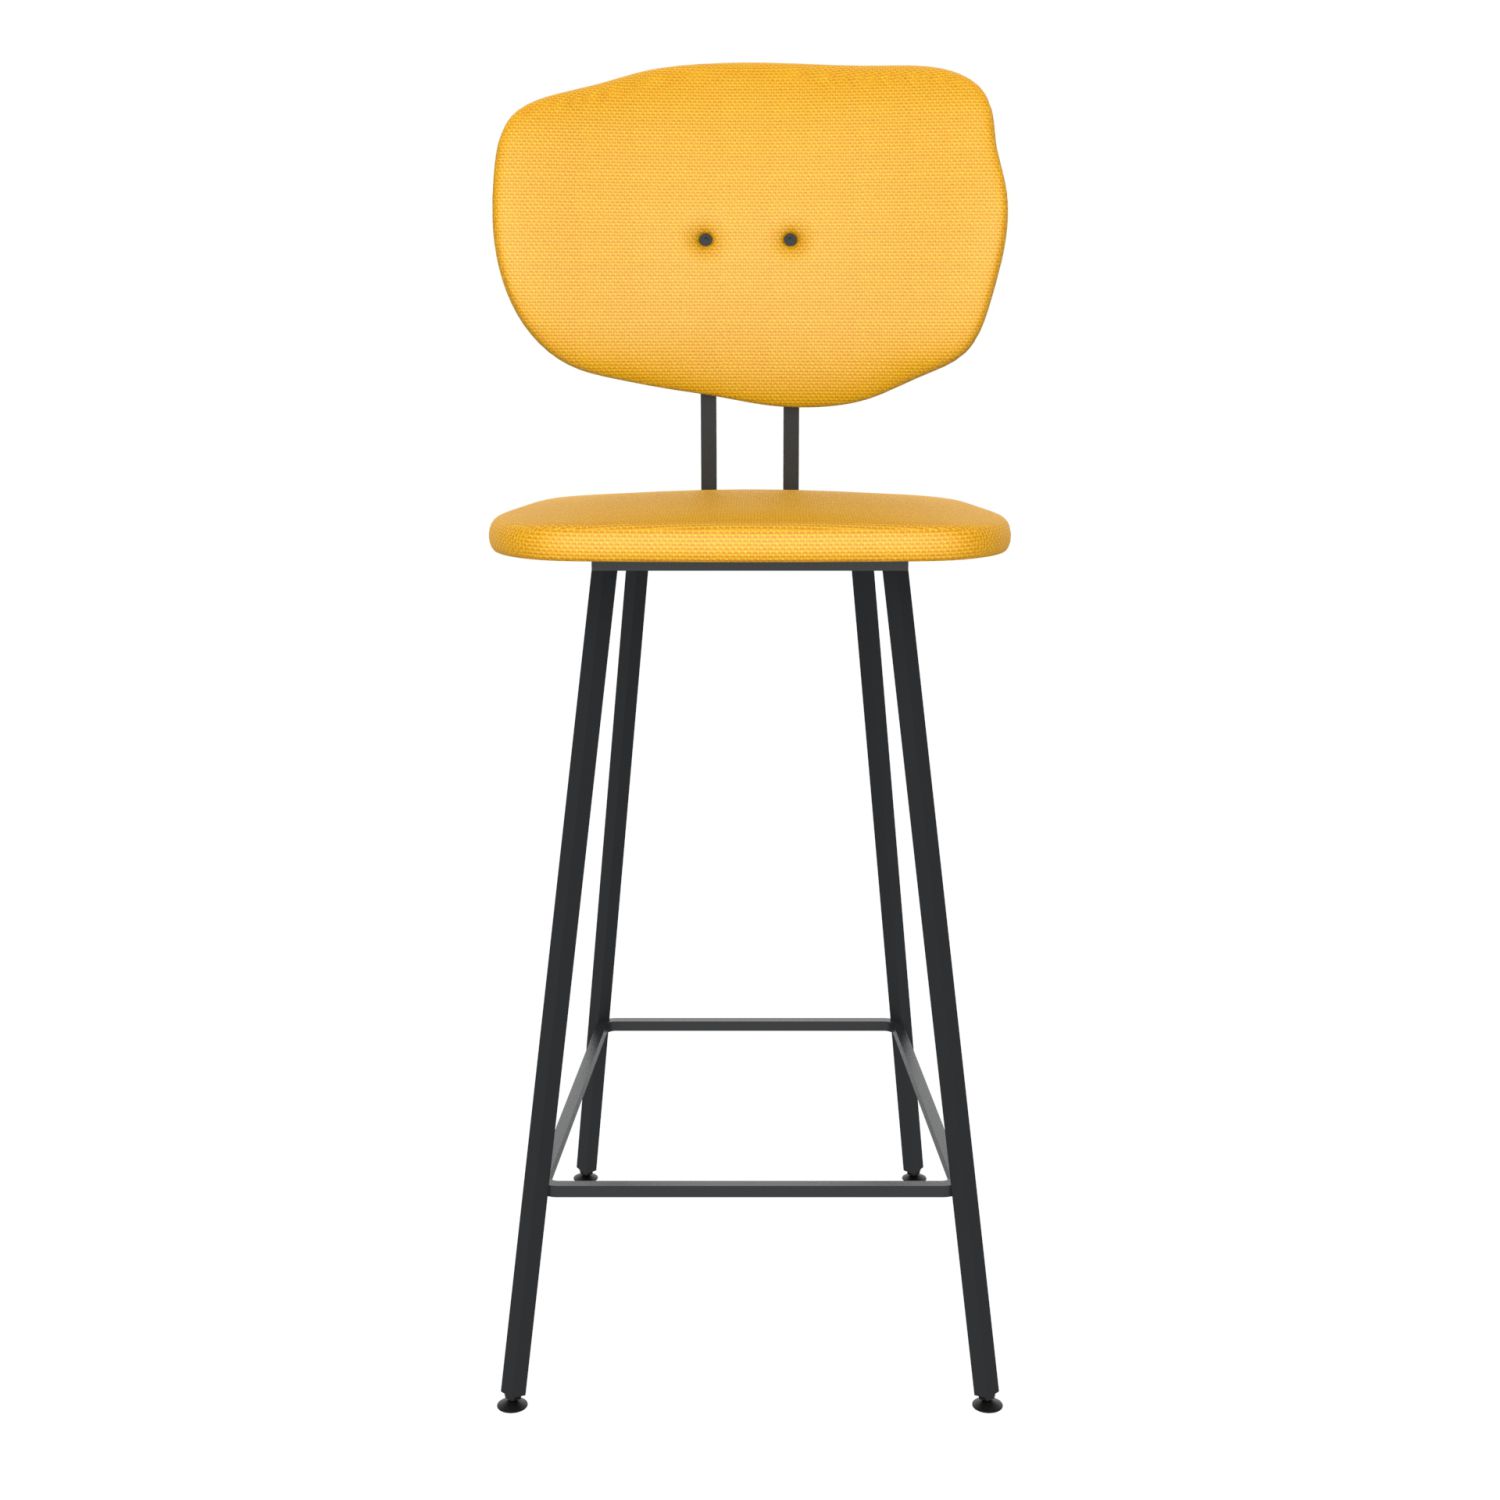 maarten baas barstool 75 cm without armrests backrest f lemon yellow 051 frame black